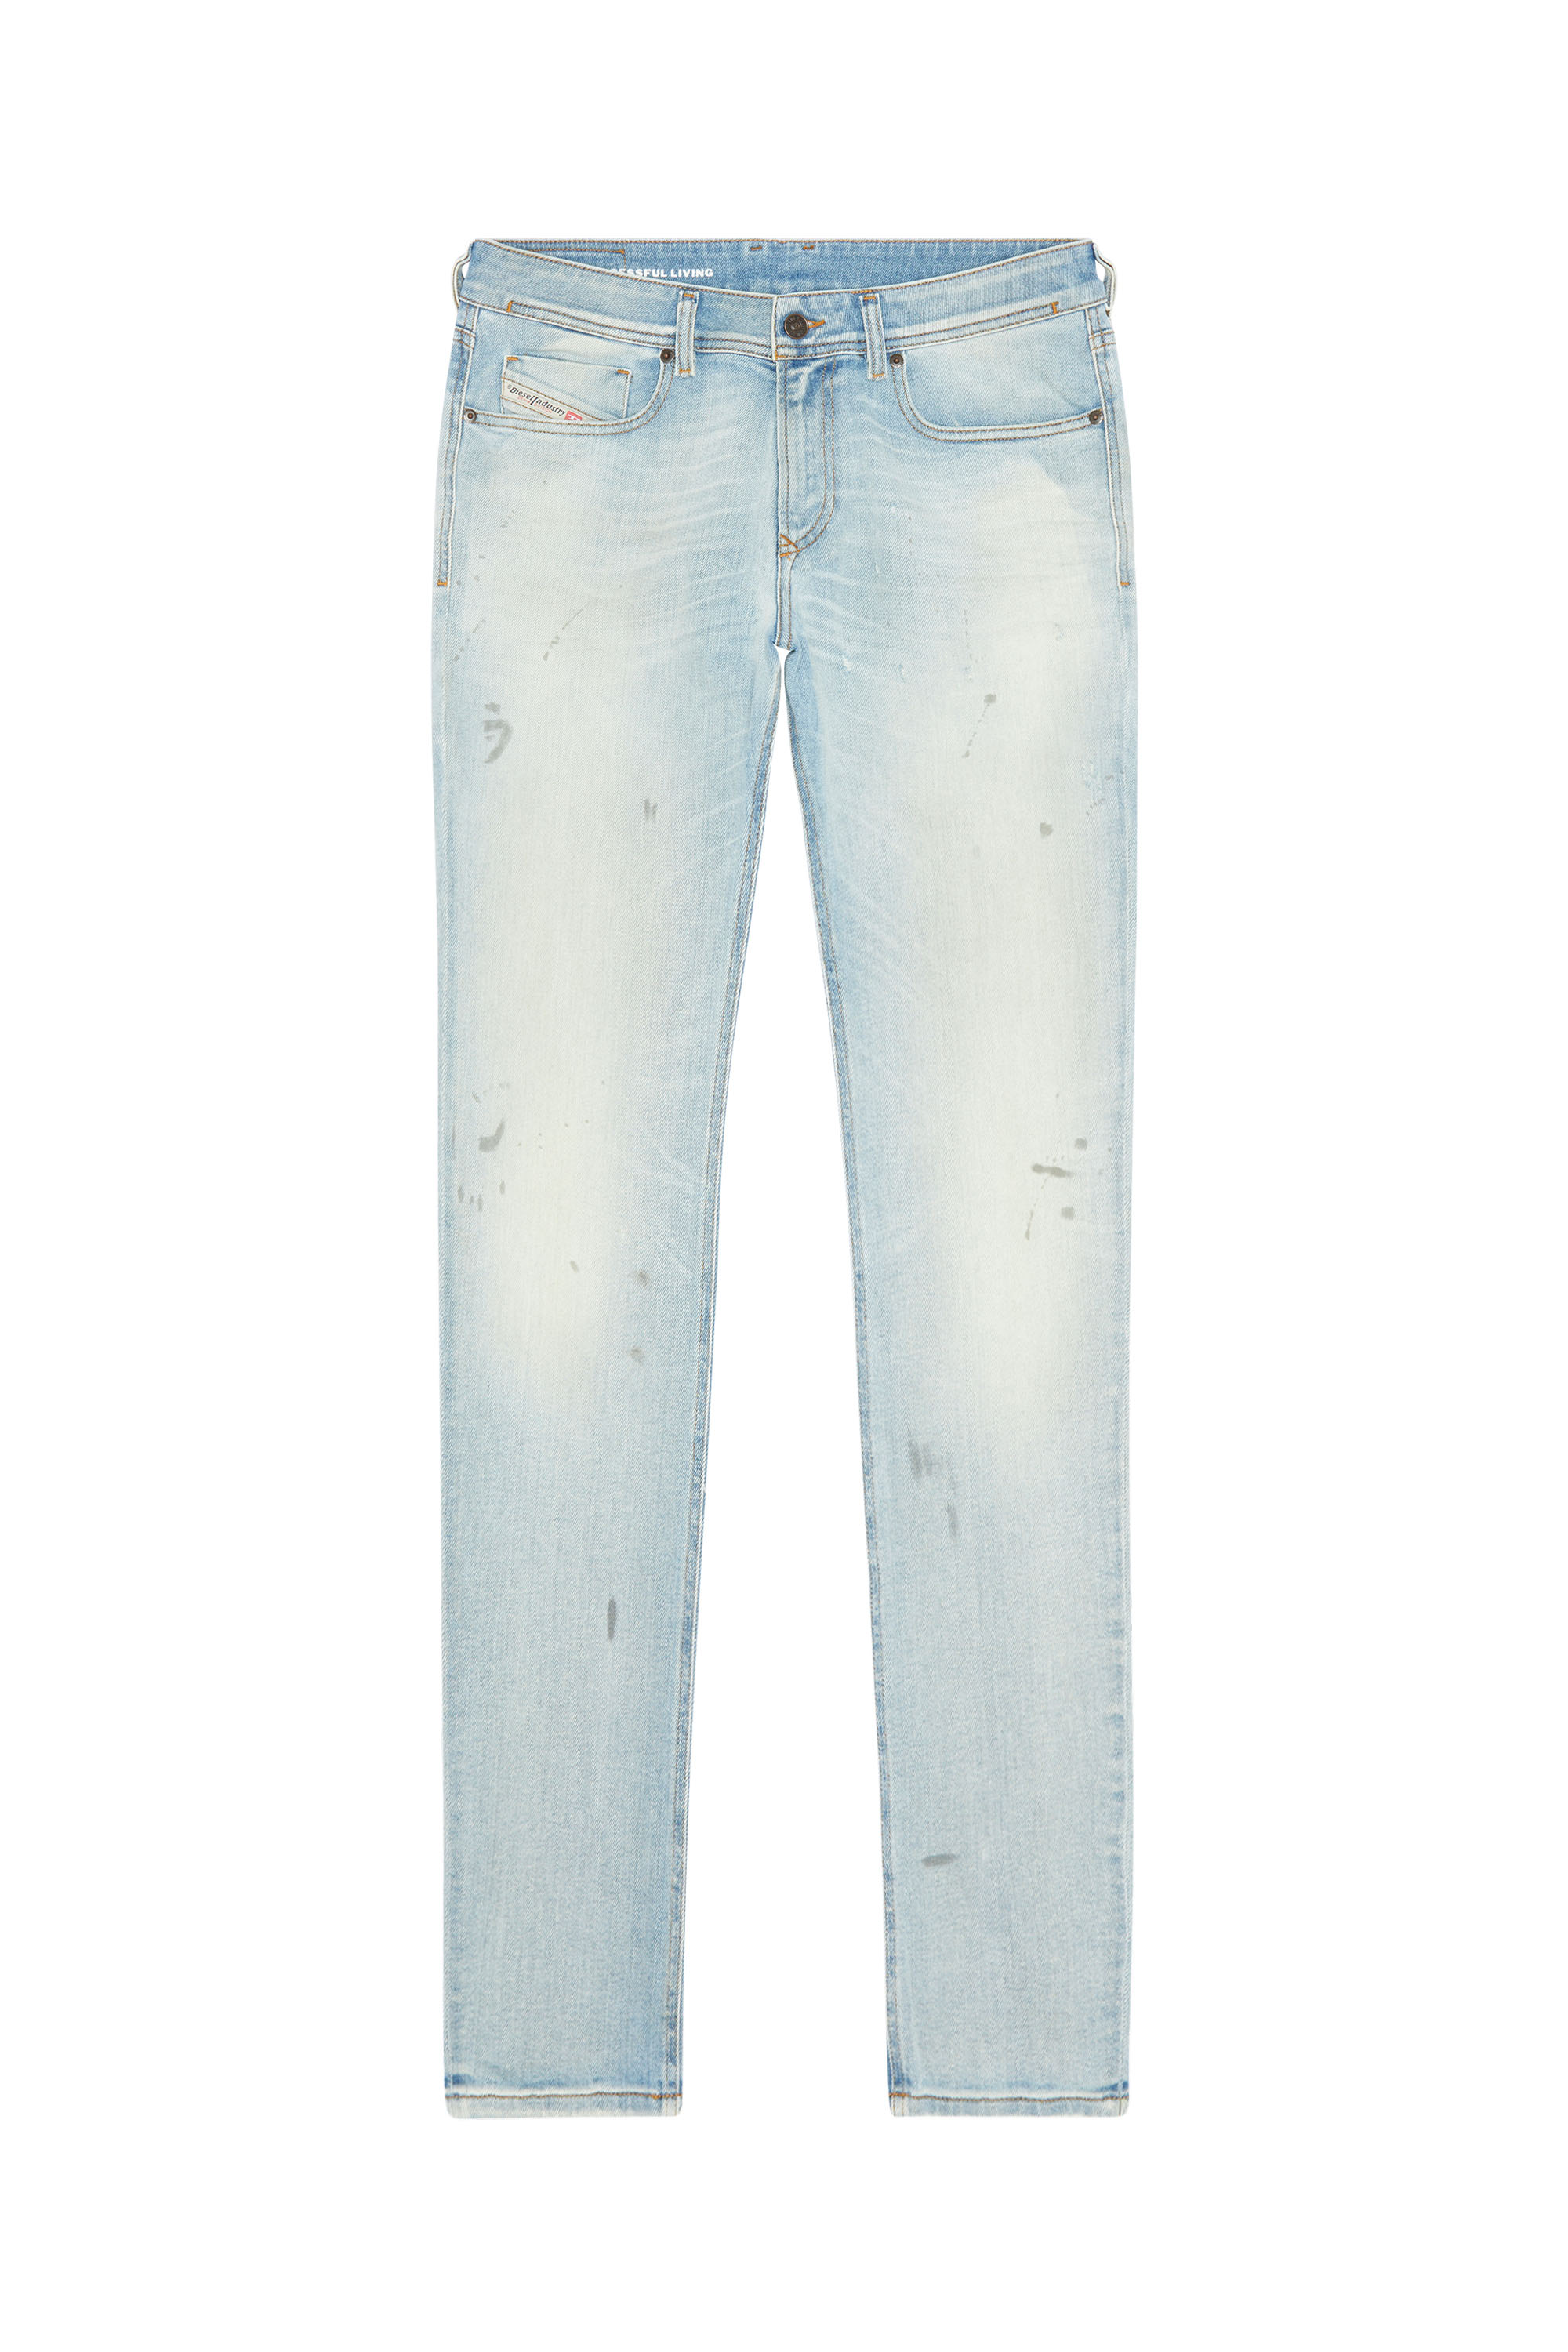 Diesel - Skinny Jeans 1979 Sleenker 09E89, Light Blue - Image 5